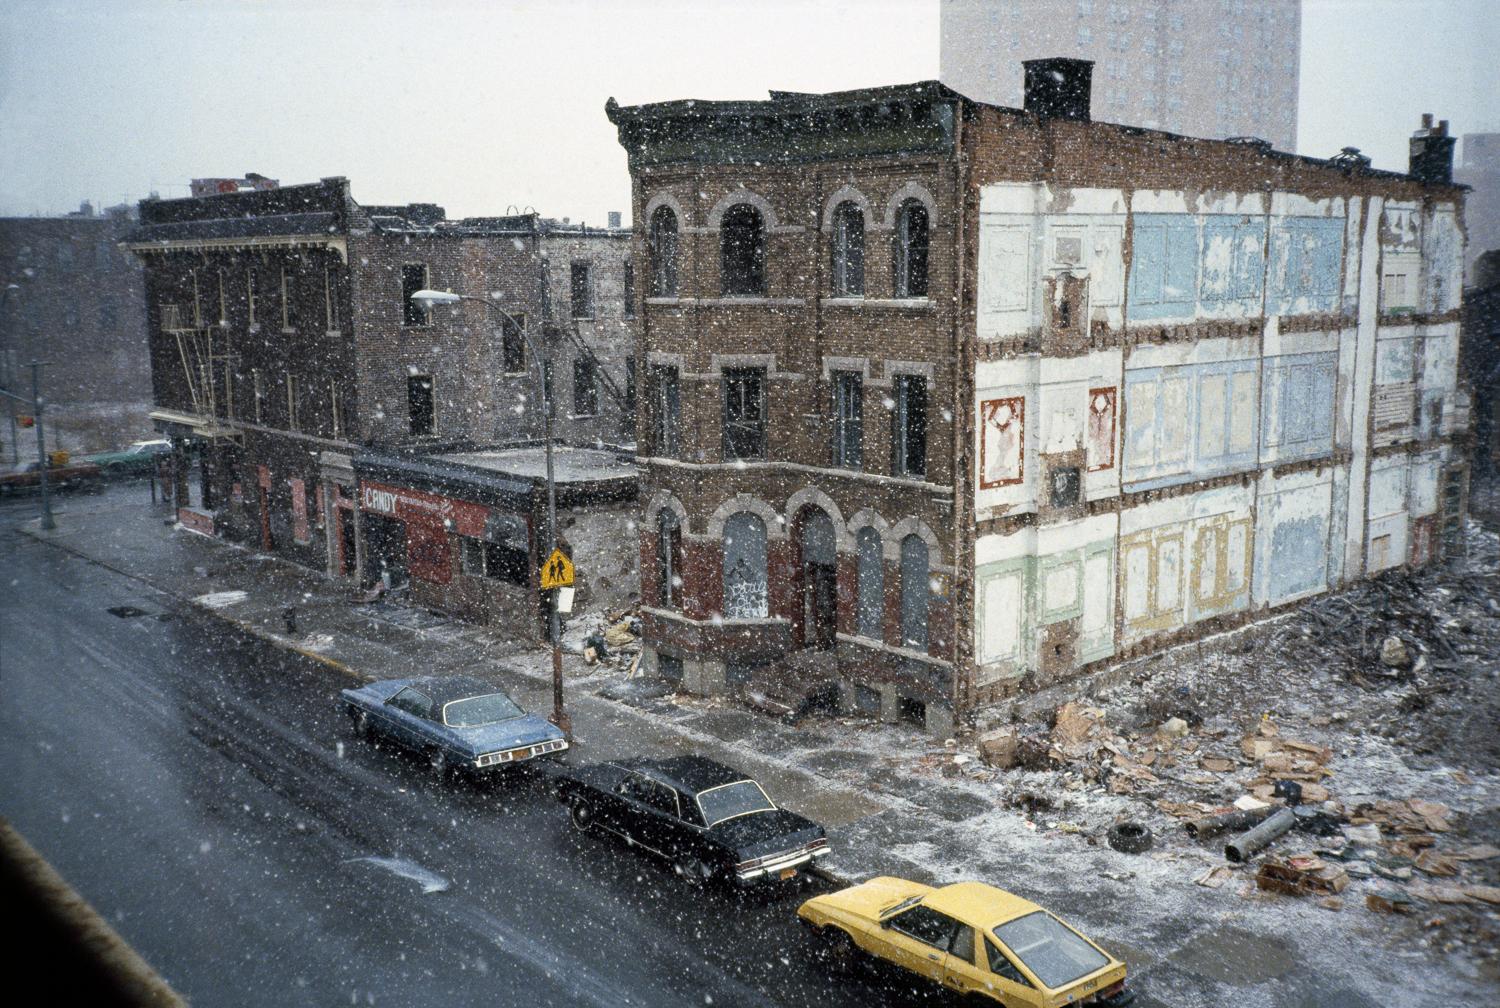 Storm de neige de printemps à travers les fenêtres de la salle de classe, Bushwick Avenue, Brooklyn, NY - Photograph de Meryl Meisler